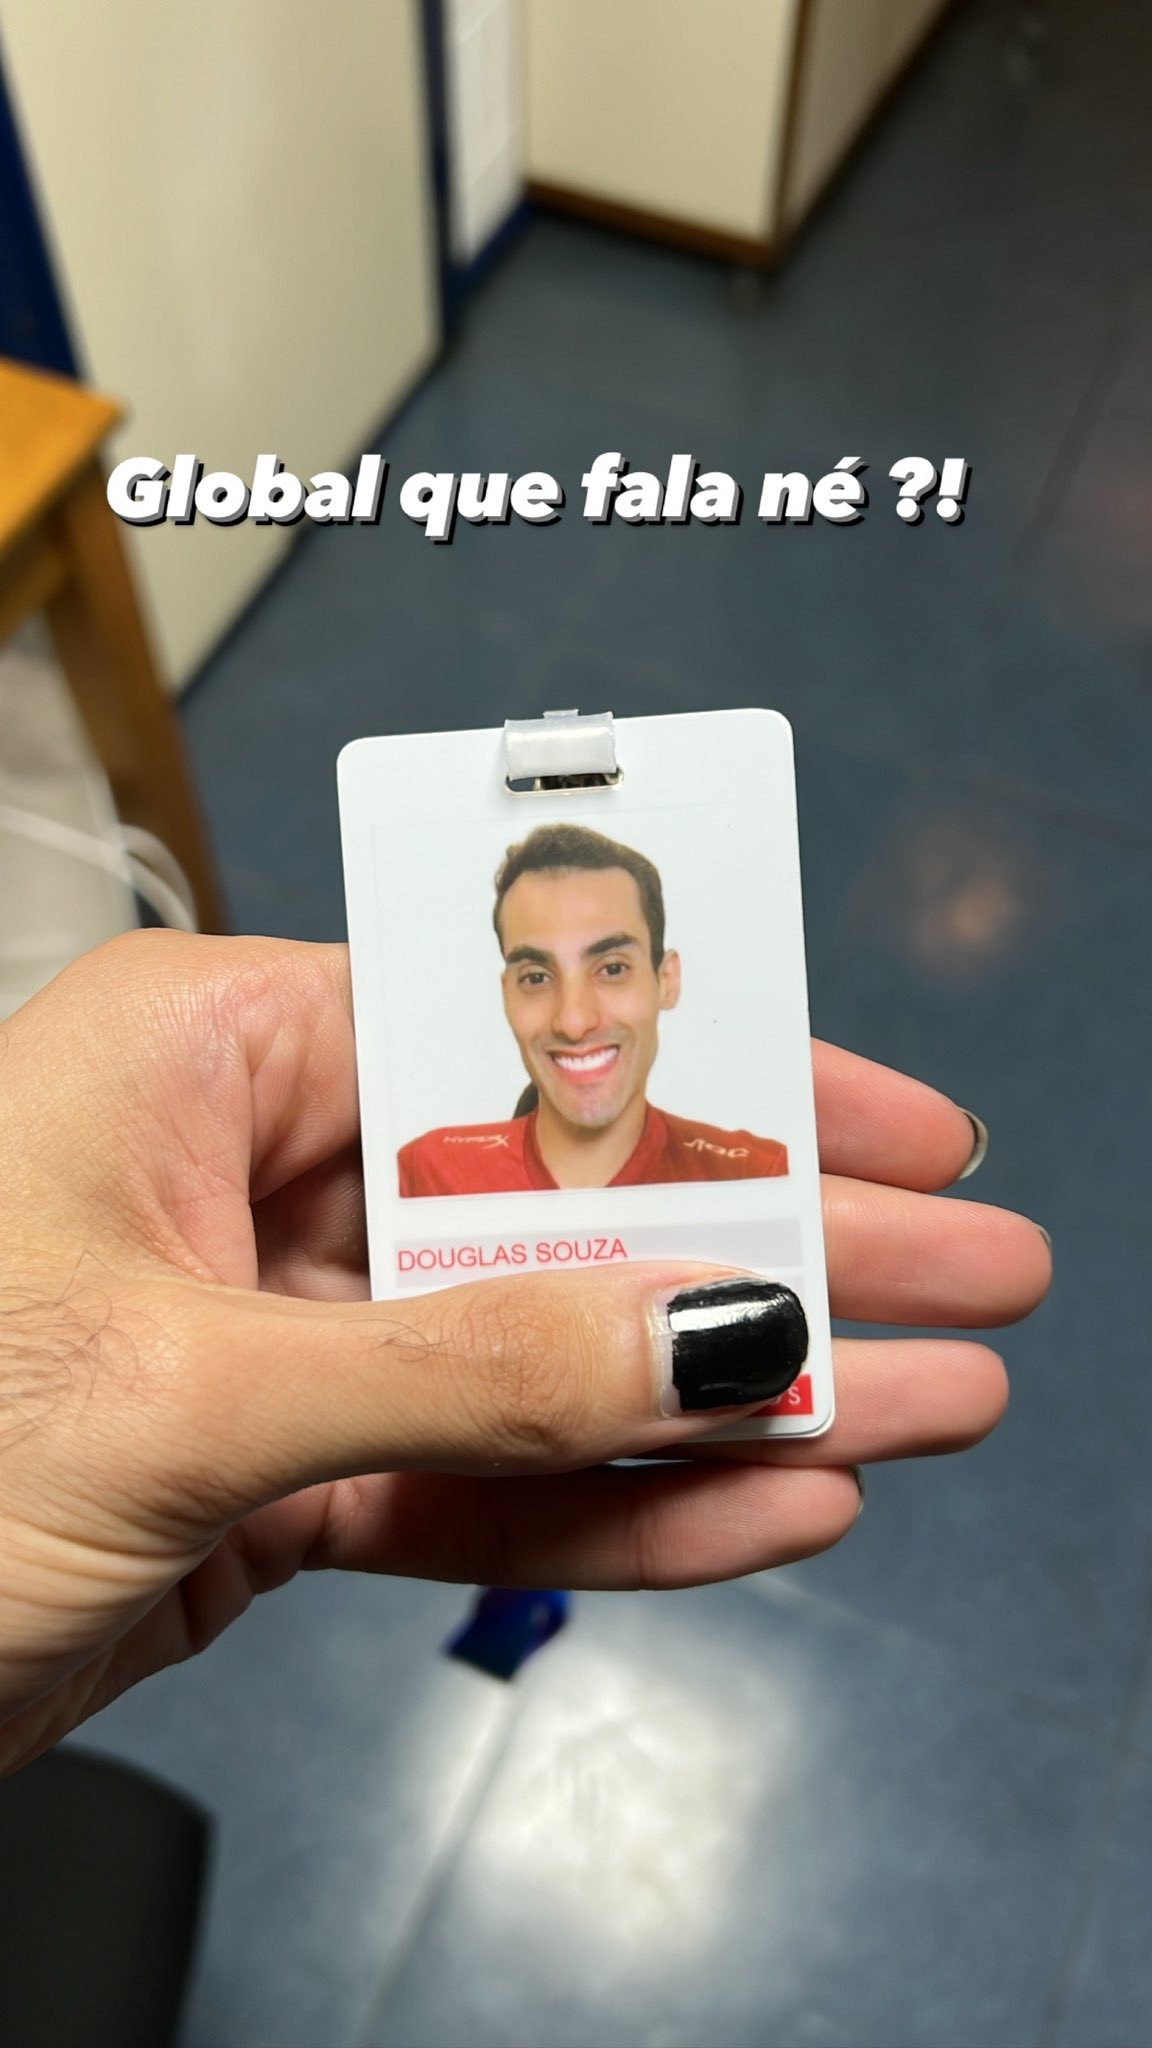 Douglas Souza publica imagem segurando crachá da Rede Globo com sua foto e nome (Foto: Reprodução/Twitter)